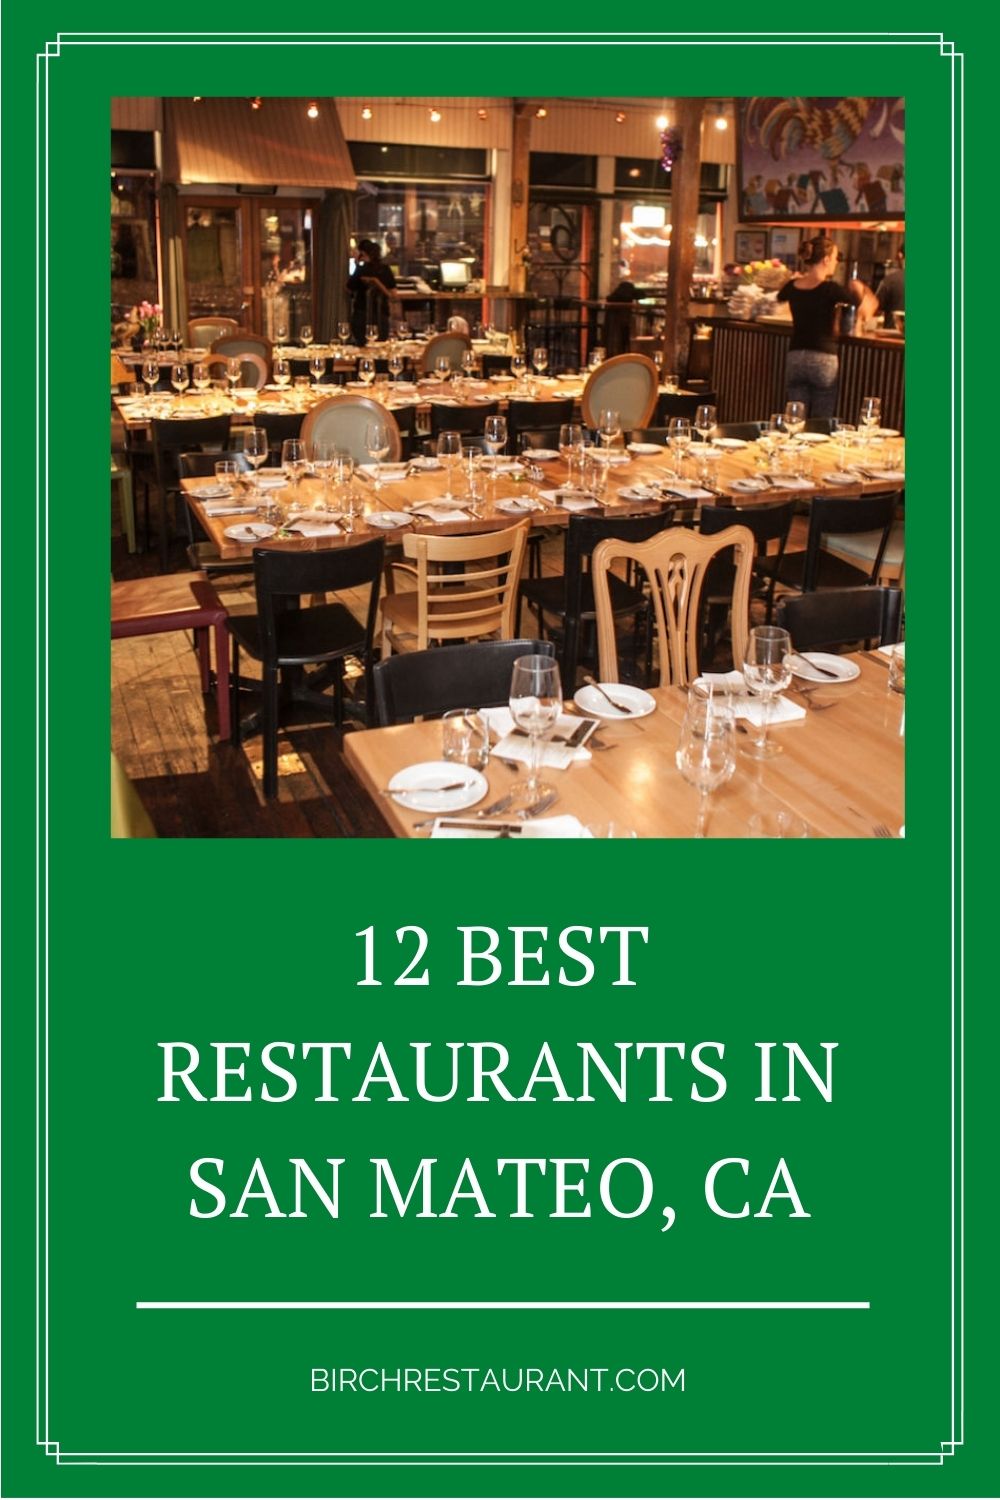 Best Restaurants in San Mateo